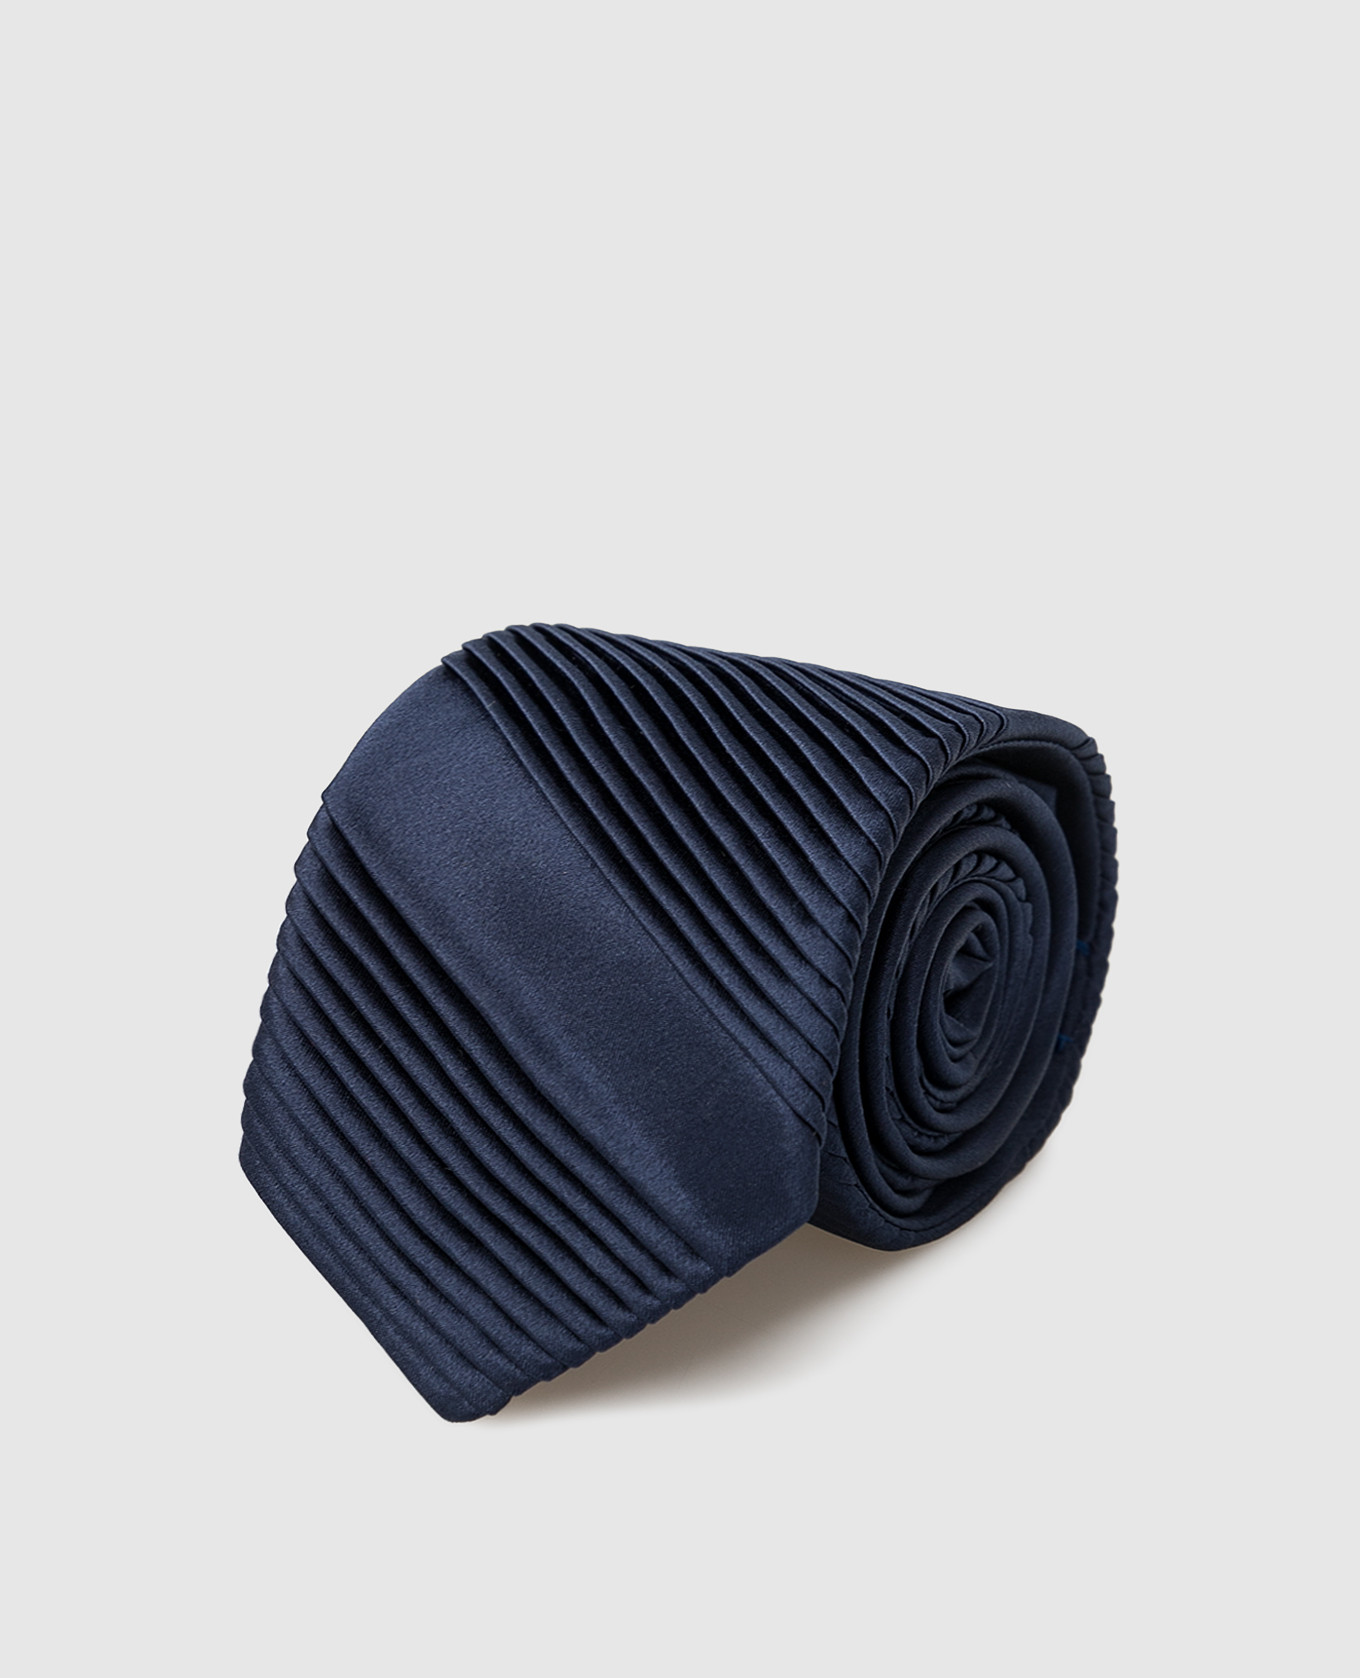 Children's silk navy patterned tie